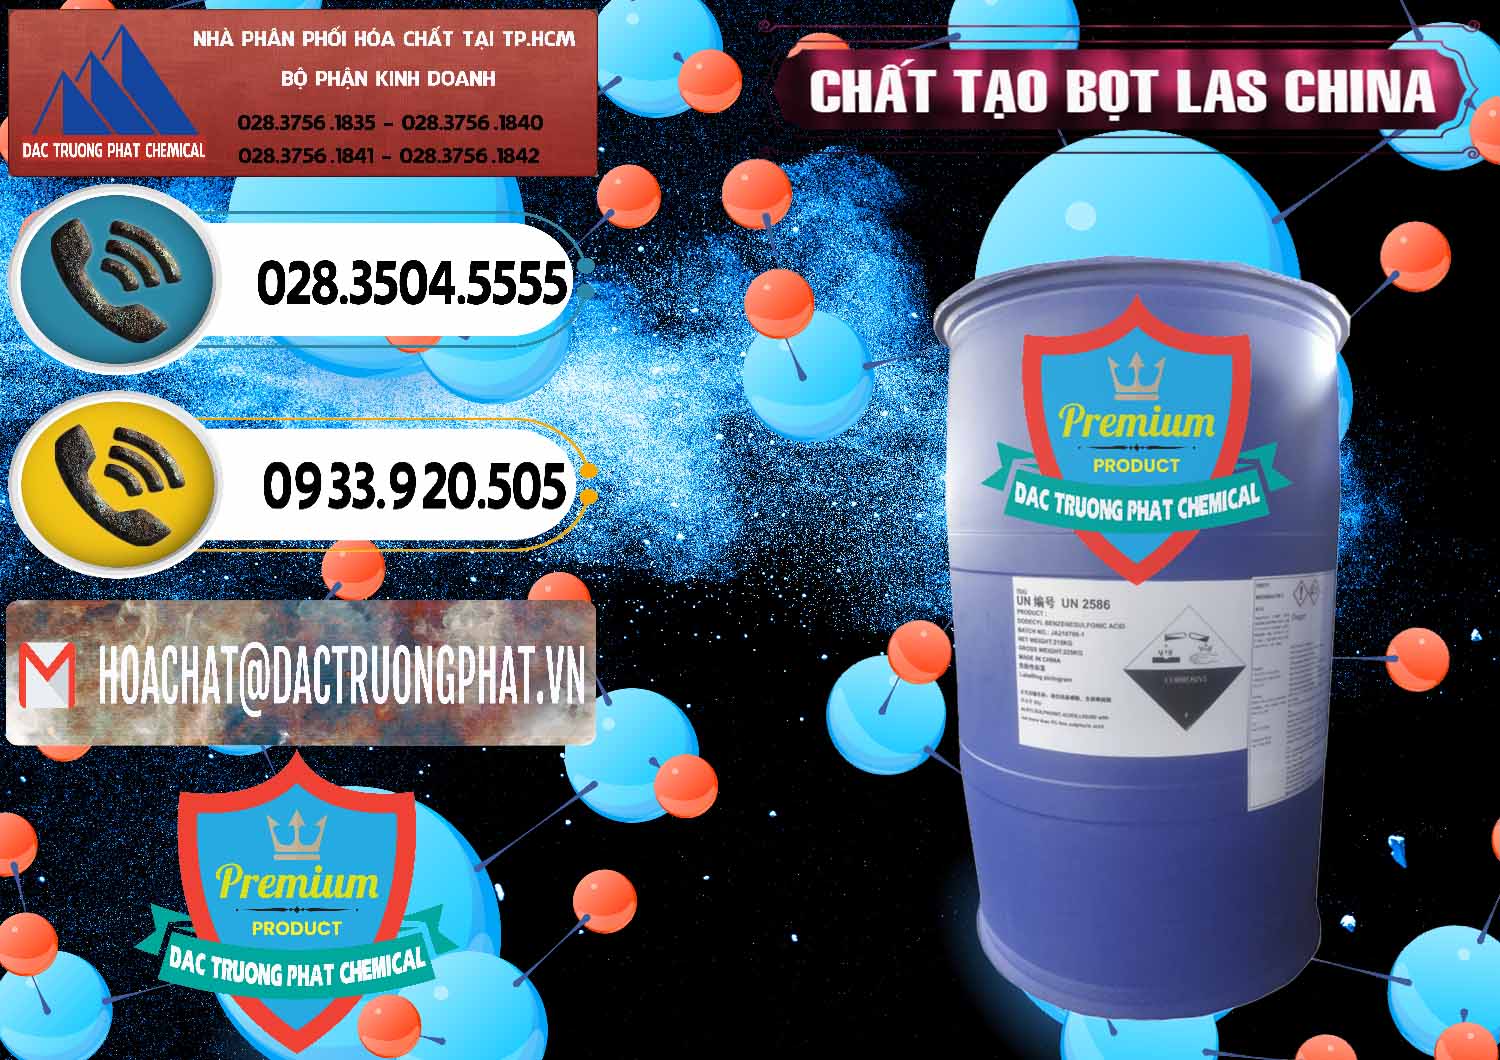 Đơn vị bán ( cung ứng ) Chất tạo bọt Las Trung Quốc China - 0451 - Chuyên cung cấp ( bán ) hóa chất tại TP.HCM - hoachatdetnhuom.vn